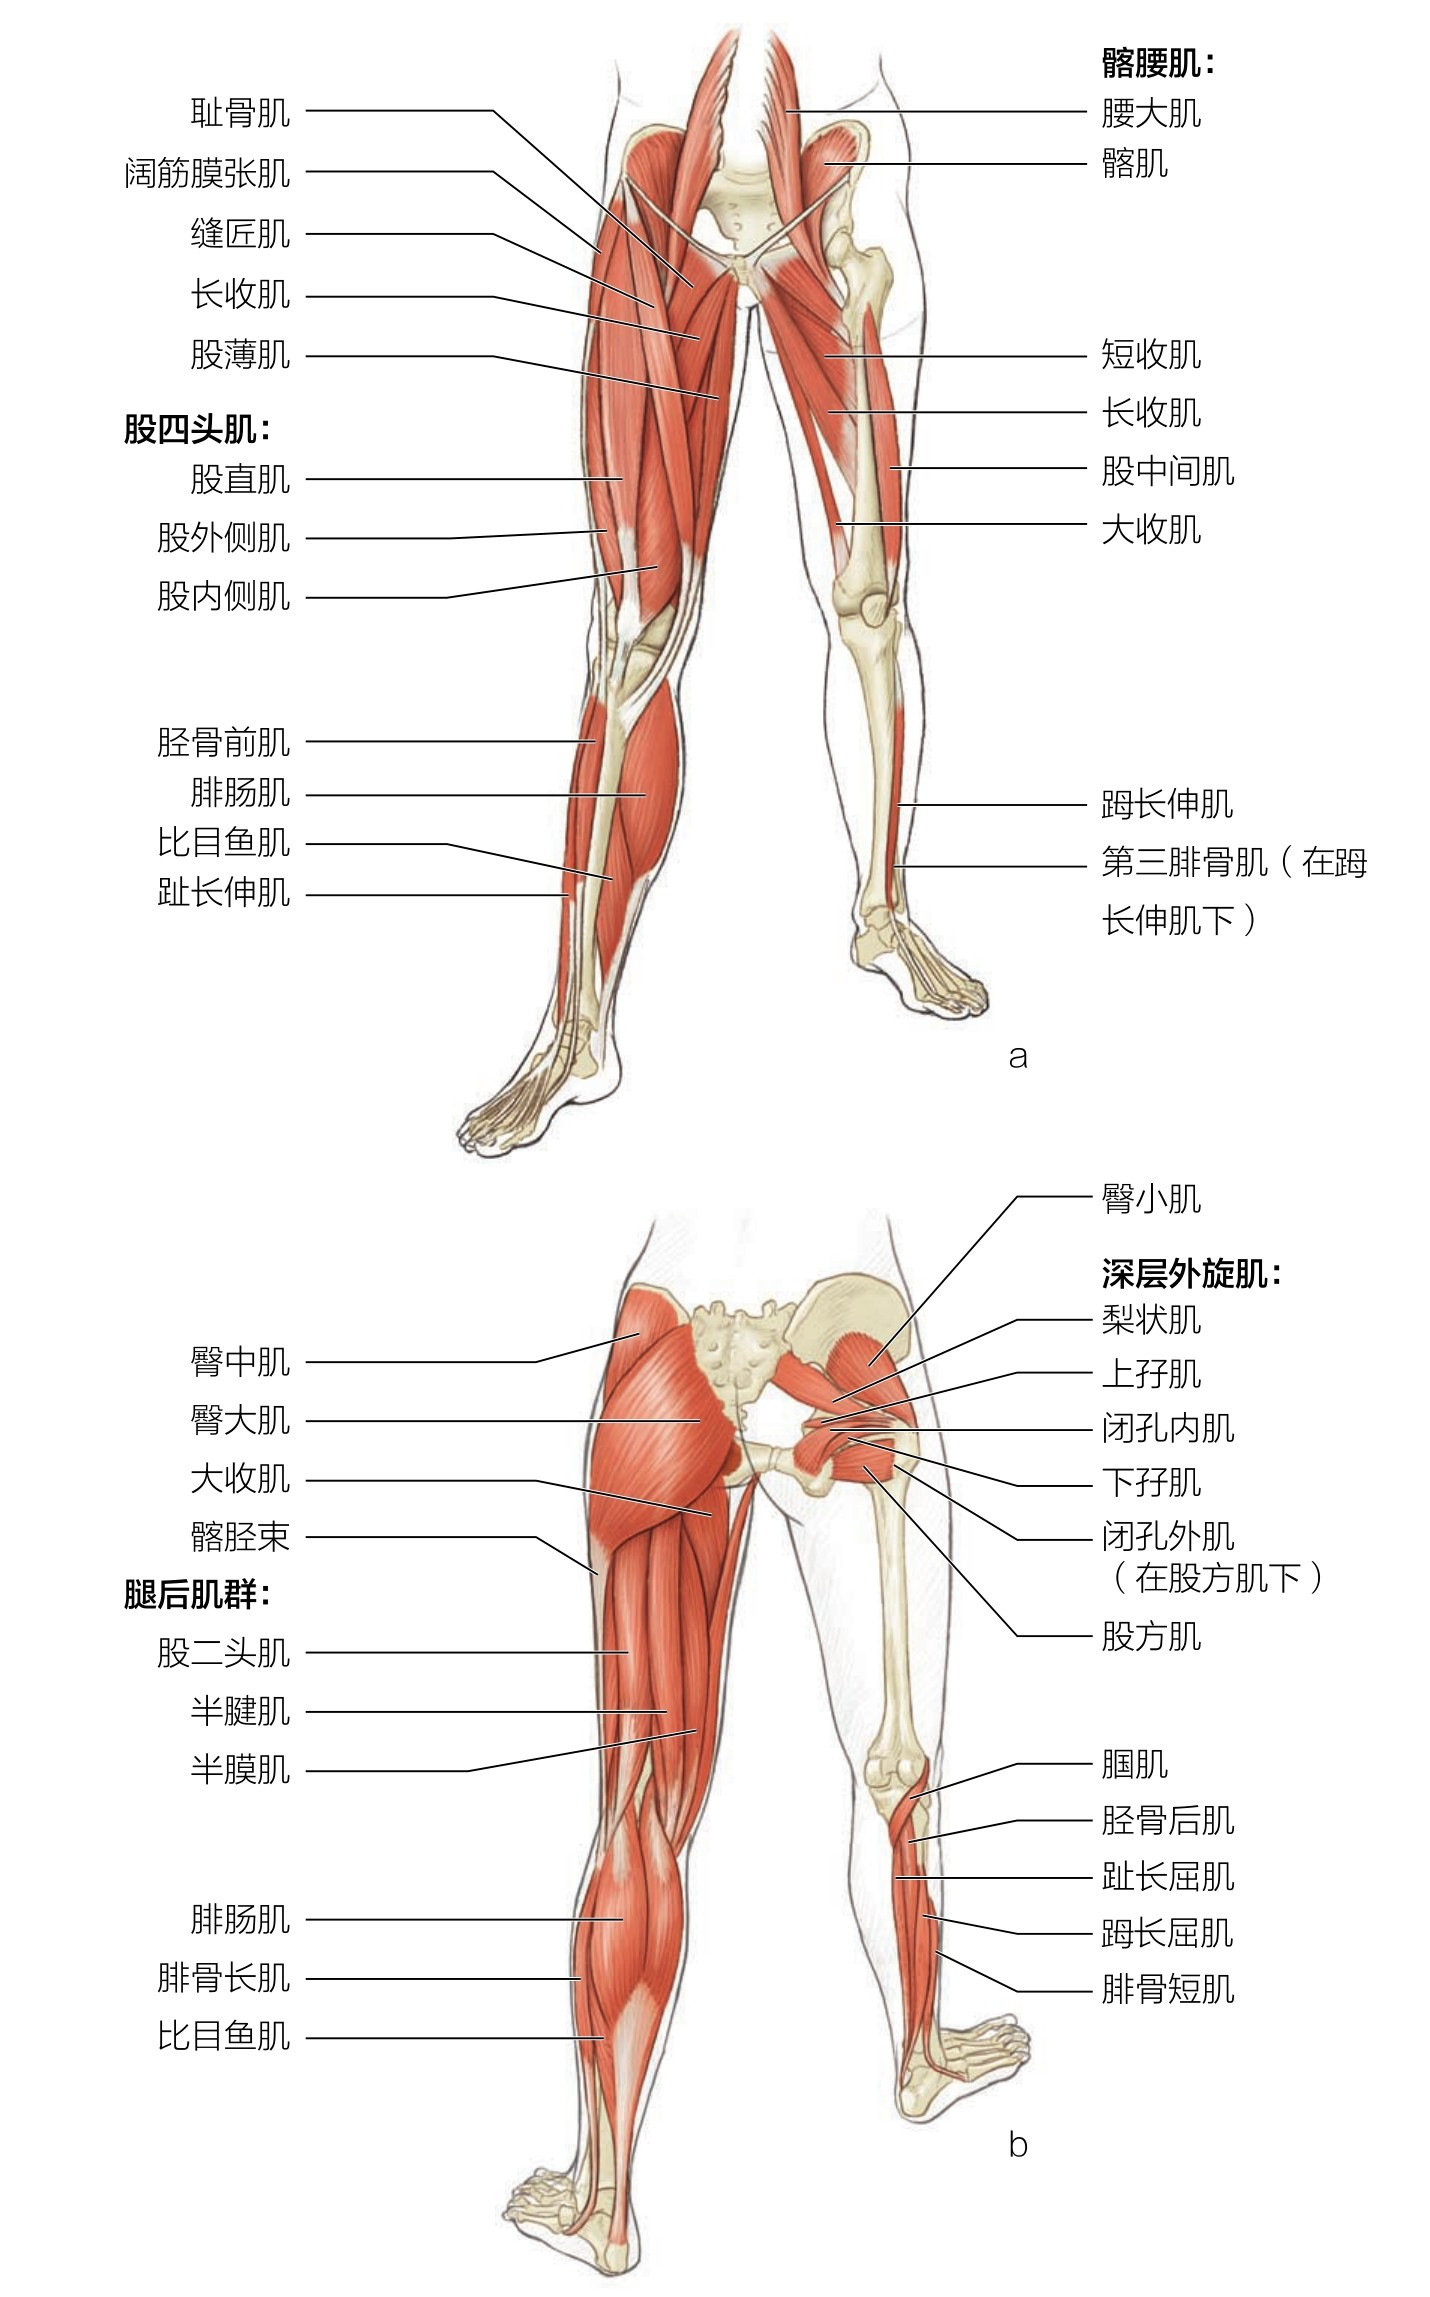 先来了解下肢肌肉的构成:如何充分锻炼下肢力量?